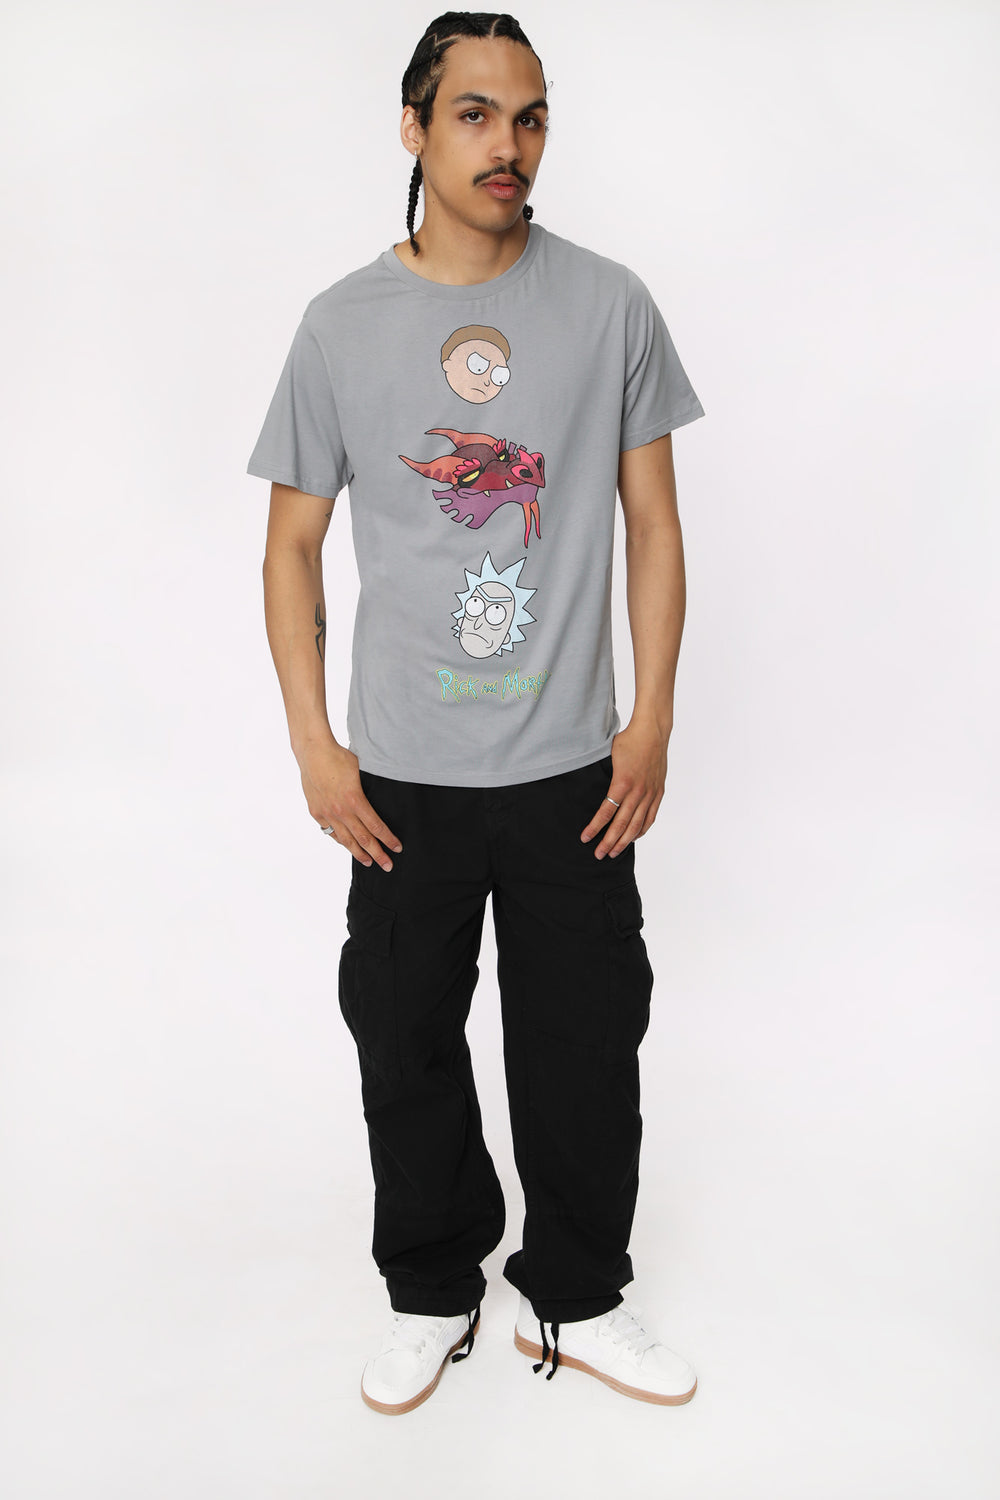 T-Shirt Imprimé Rick et Morty Homme T-Shirt Imprimé Rick et Morty Homme